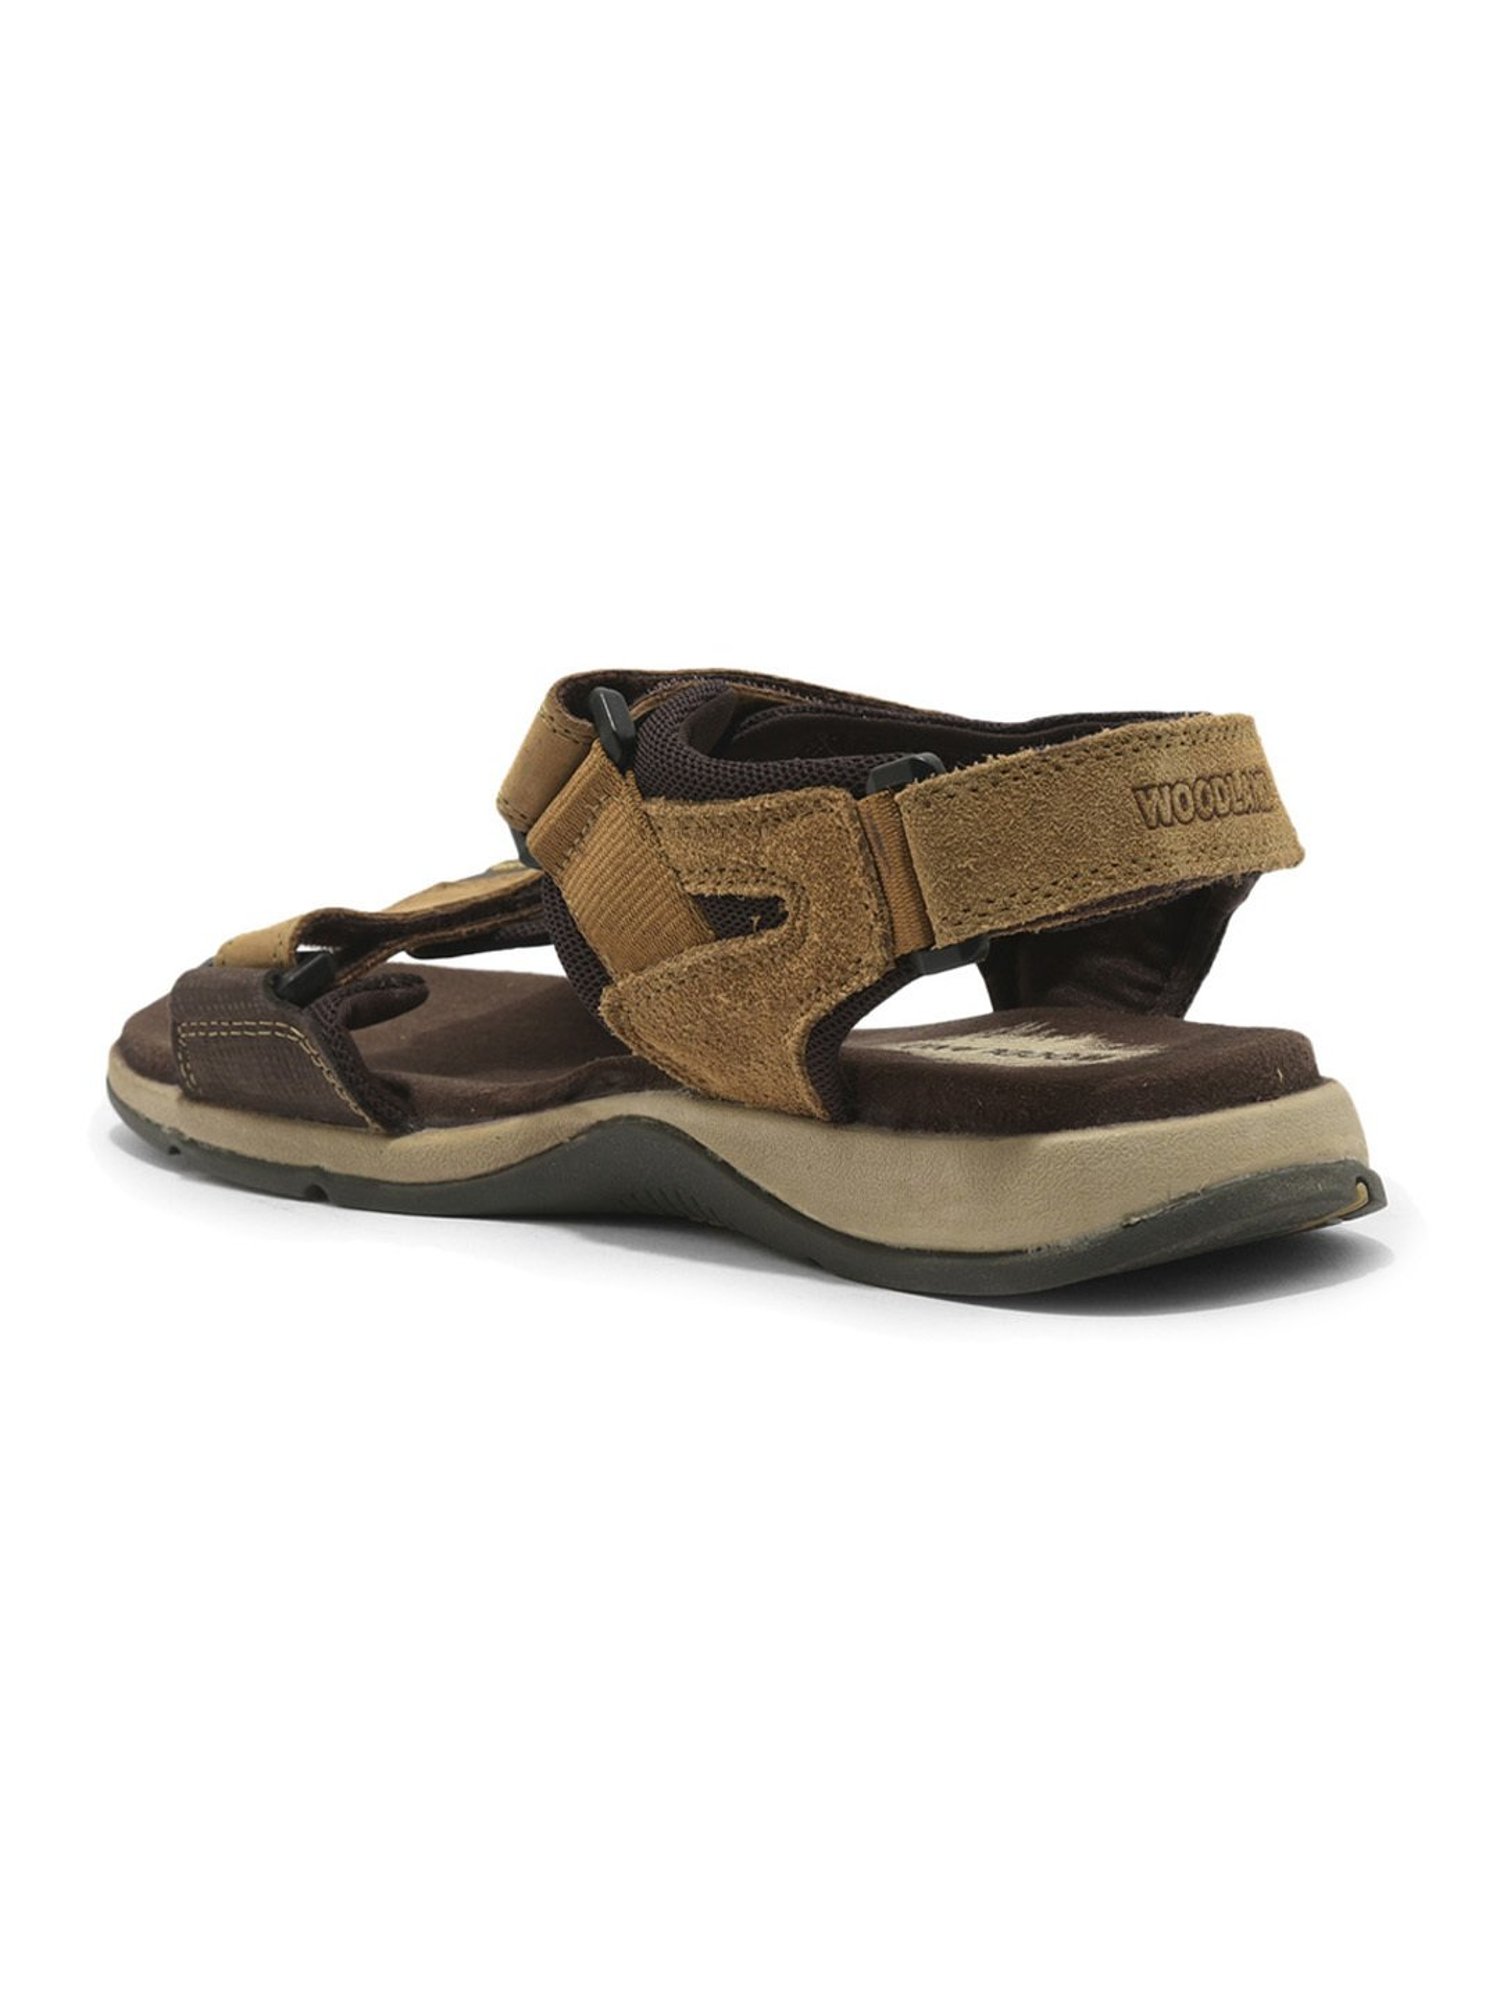 Buy Woodland ProPlanet Men Camel Brown Nubuck Leather Comfort Sandals -  Sandals for Men 6995109 | Myntra